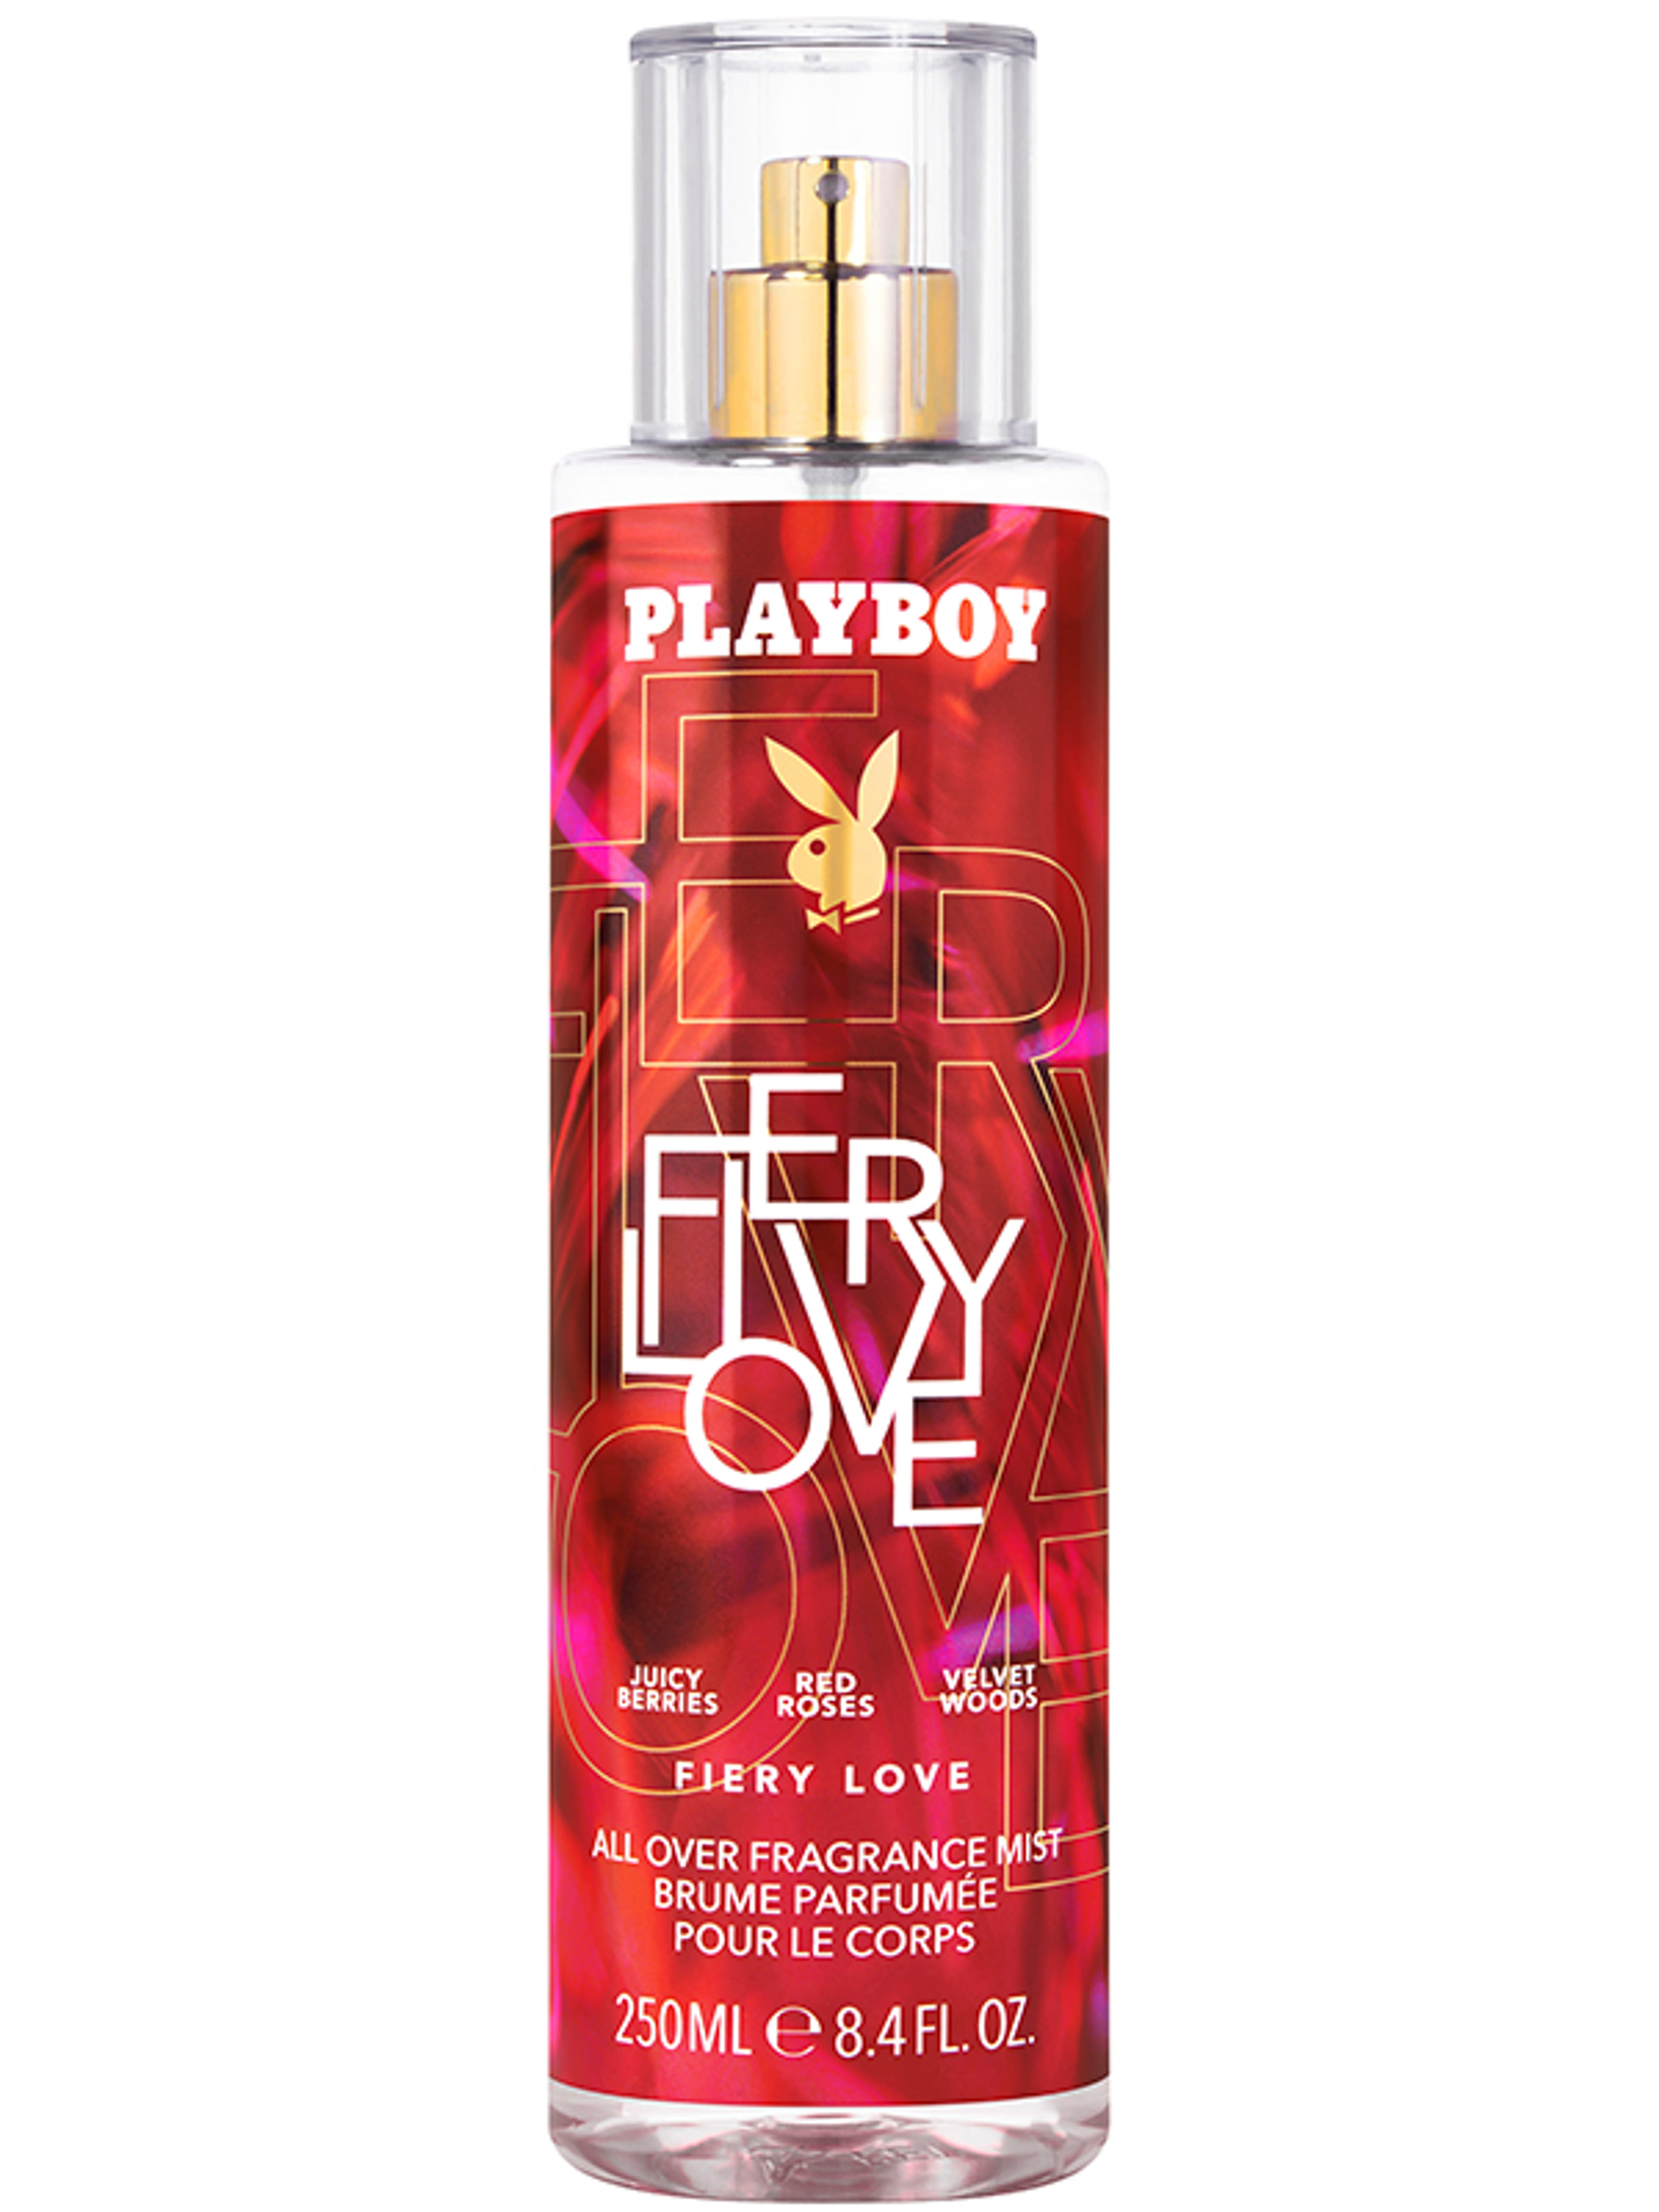 Playboy Fiery Love body mist - 250 ml